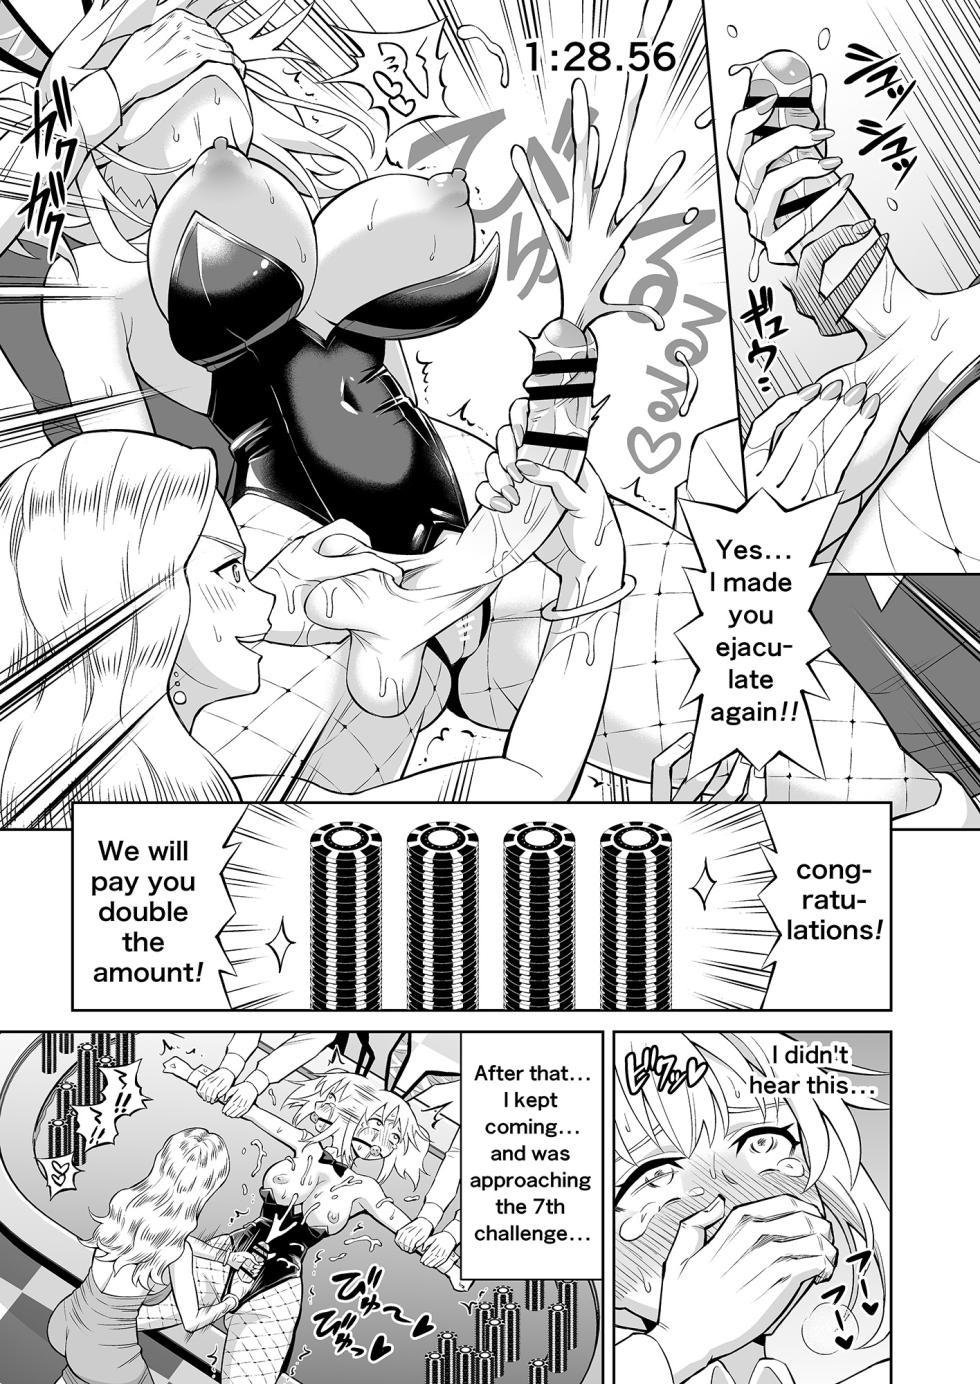 [Hitsumabushi] Double Up Challenge! [English] - Page 8